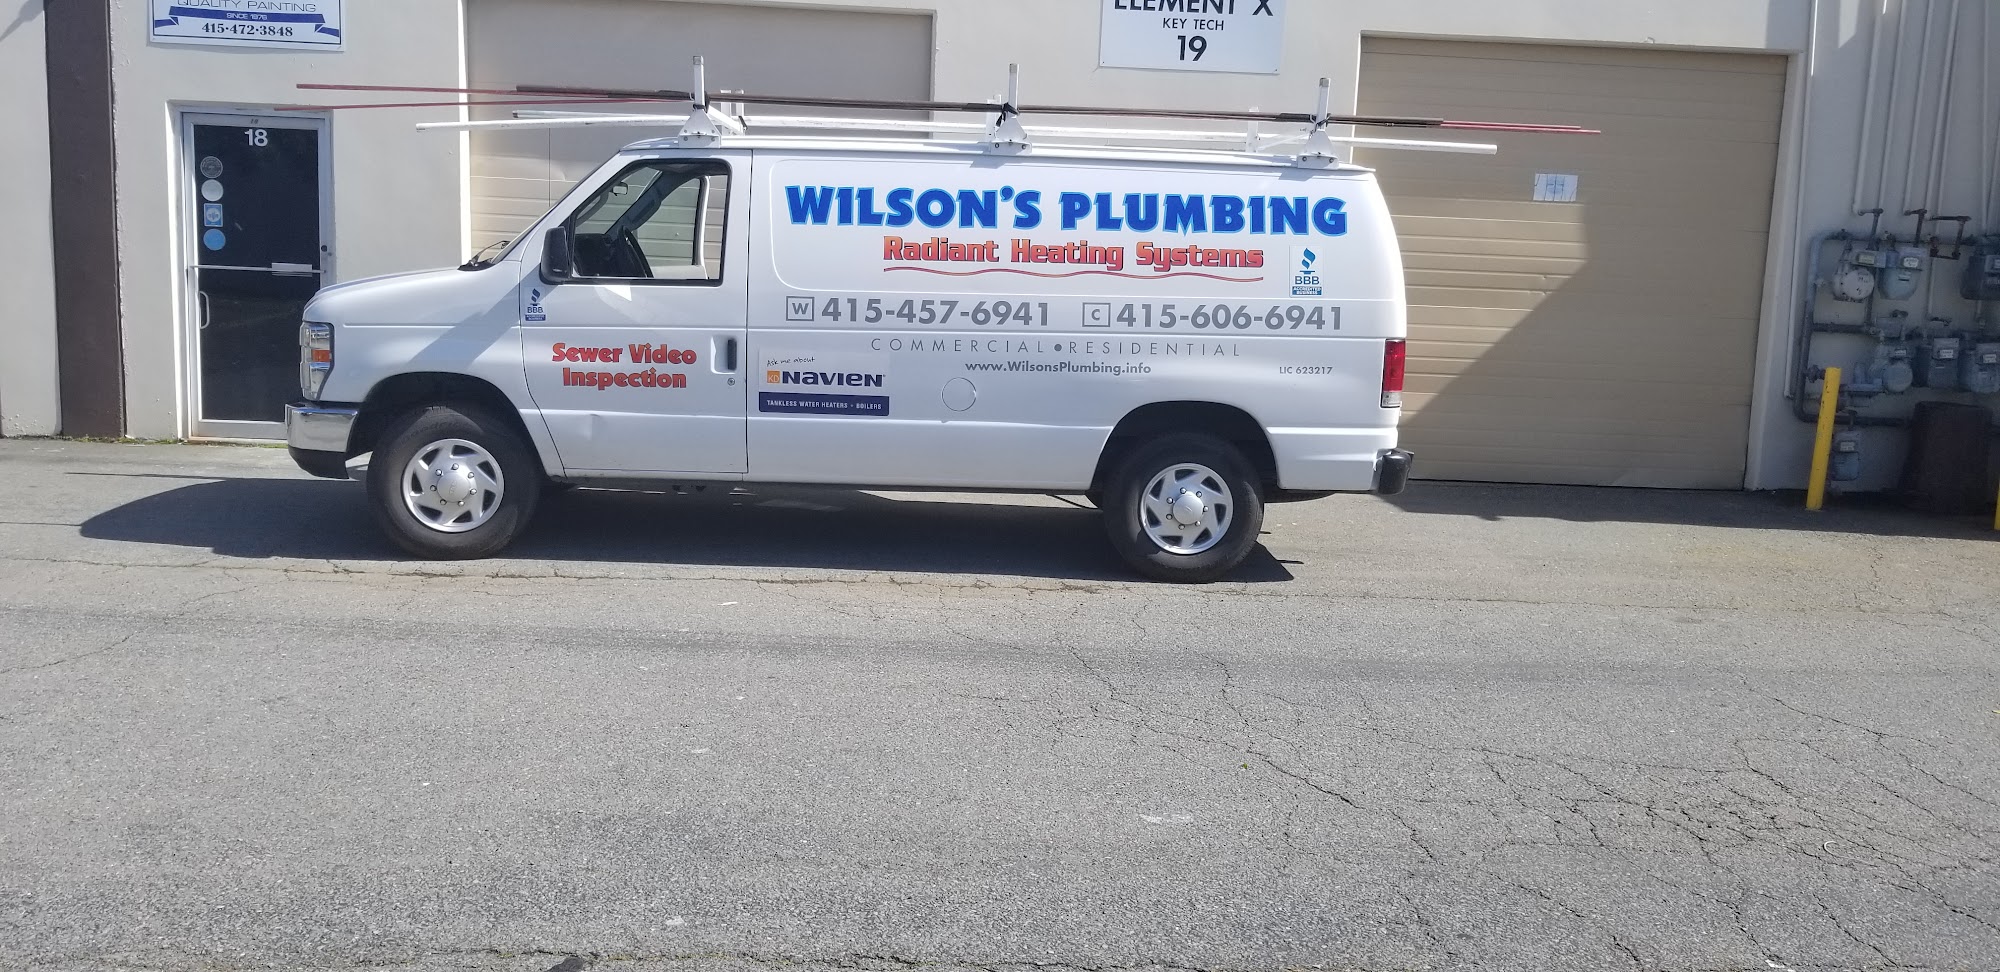 Wilson's Plumbing